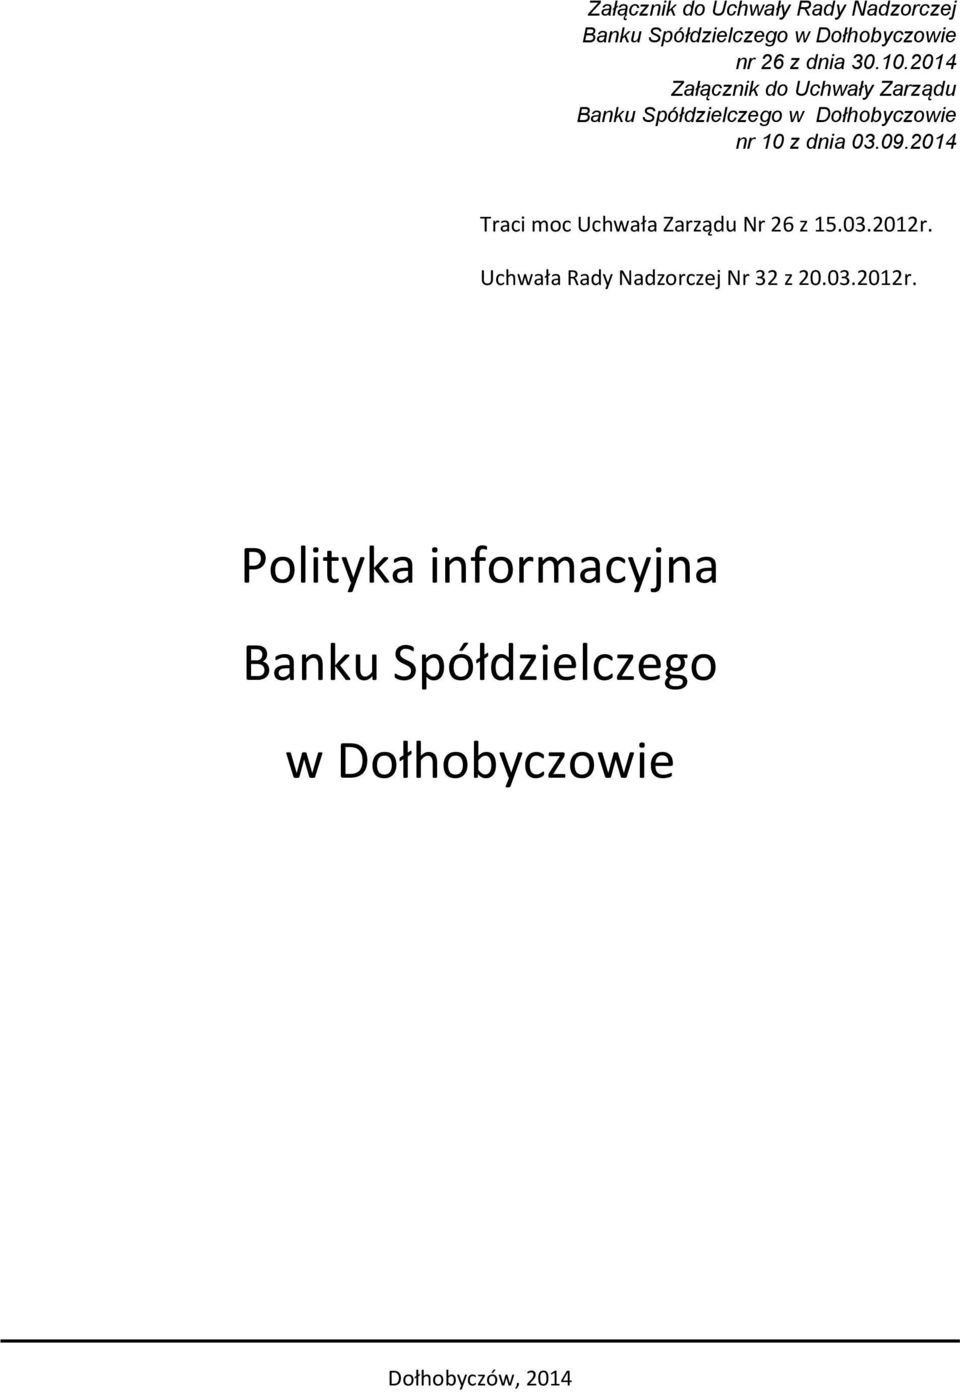 2014 Załącznik do Uchwały Zarządu Banku Spółdzielczego w Dołhobyczowie nr 10 z dnia 03.